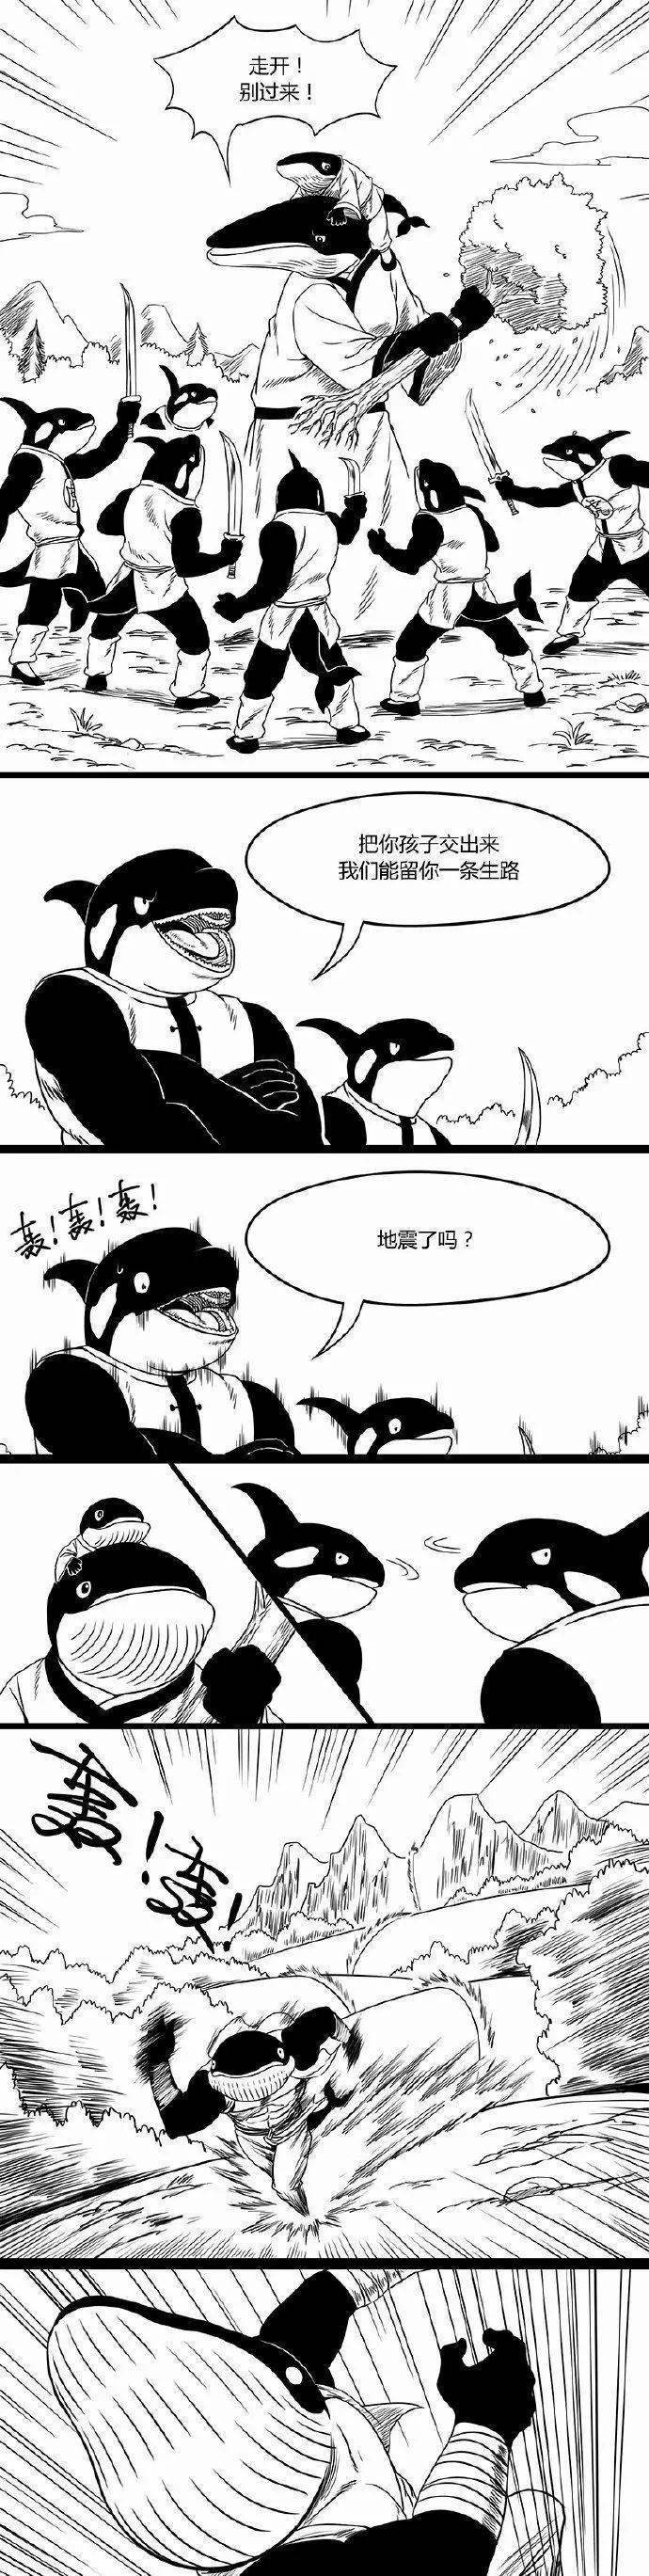 【短篇漫画】虎鲸山贼的克星_解说